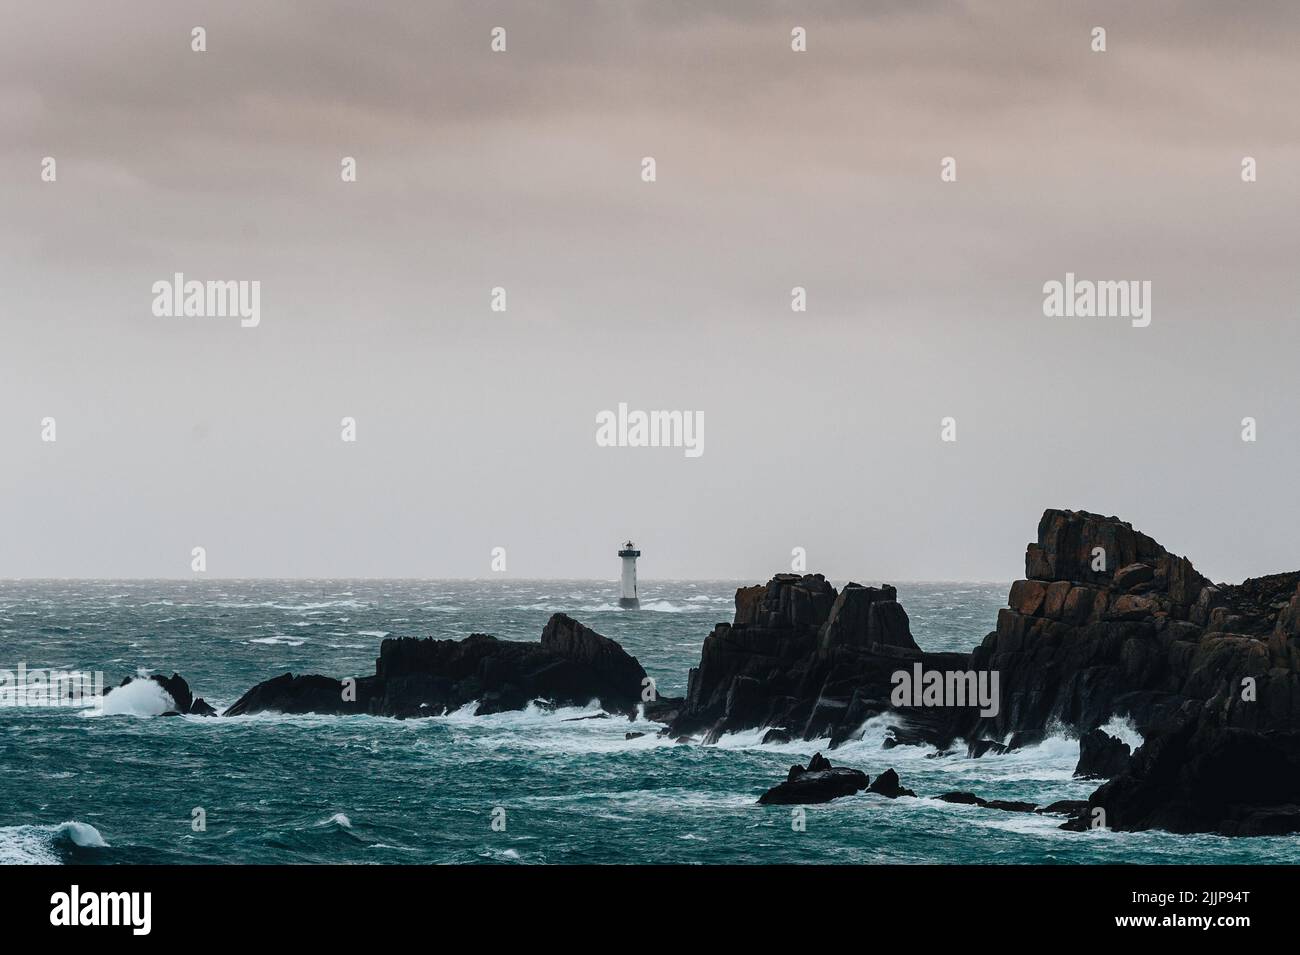 Un beau paysage avec des vagues, des rochers, et un phare dans l'extrême en Normandie, dans le nord de la France Banque D'Images